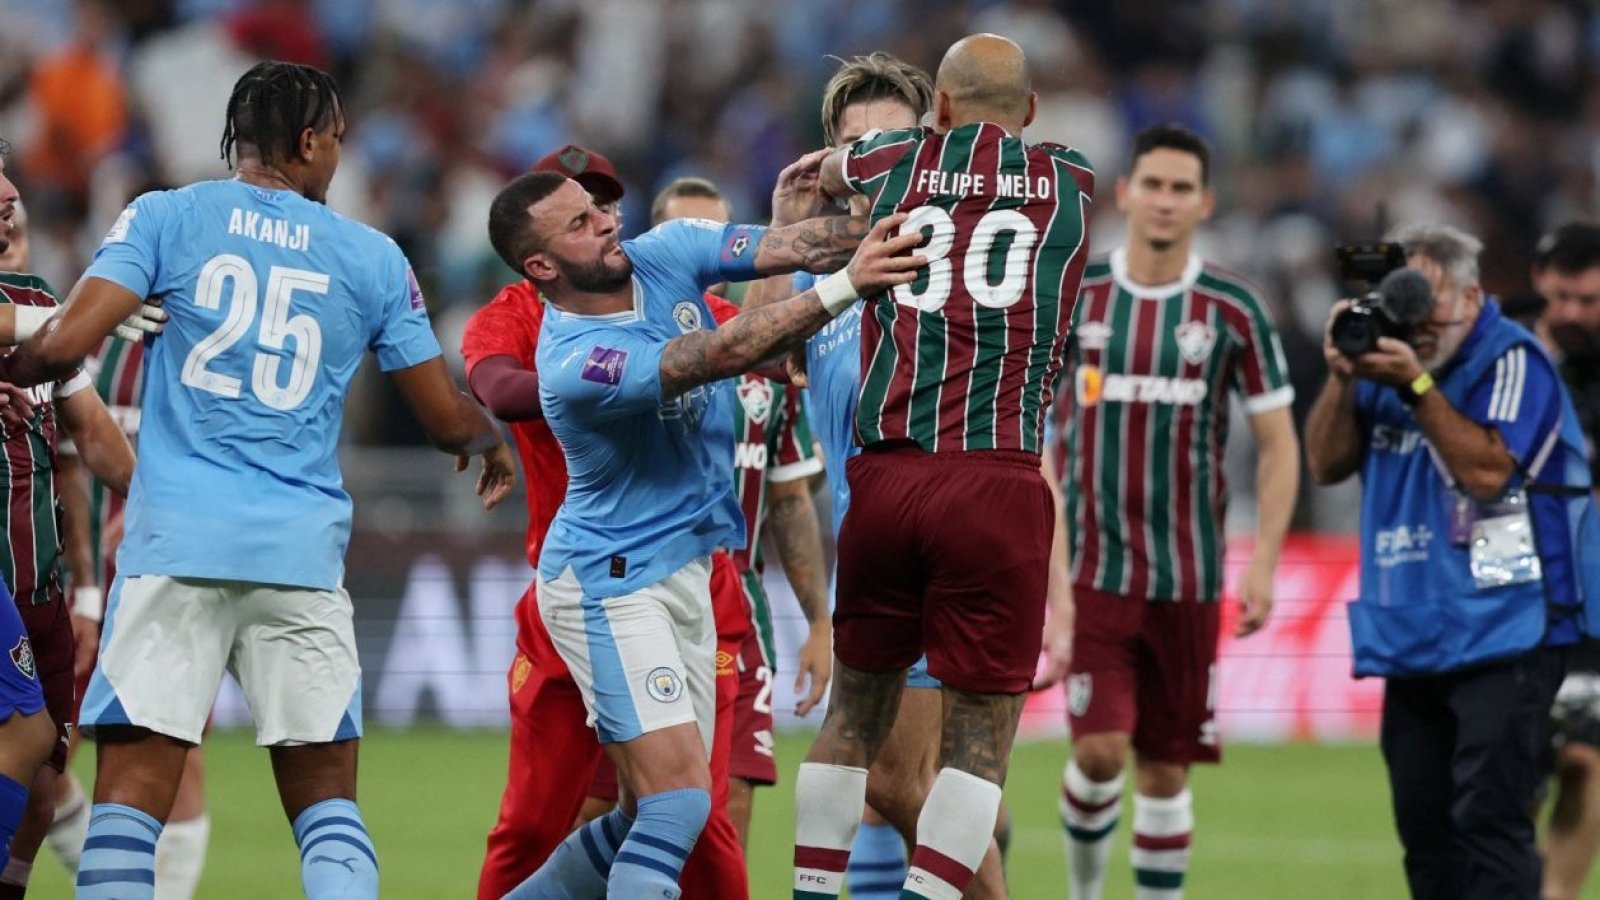 Lo volvería a hacer": Felipe Melo explica su arrebato en final del Mundial  de Clubes y apunta a un jugador del Manchester City | 24horas